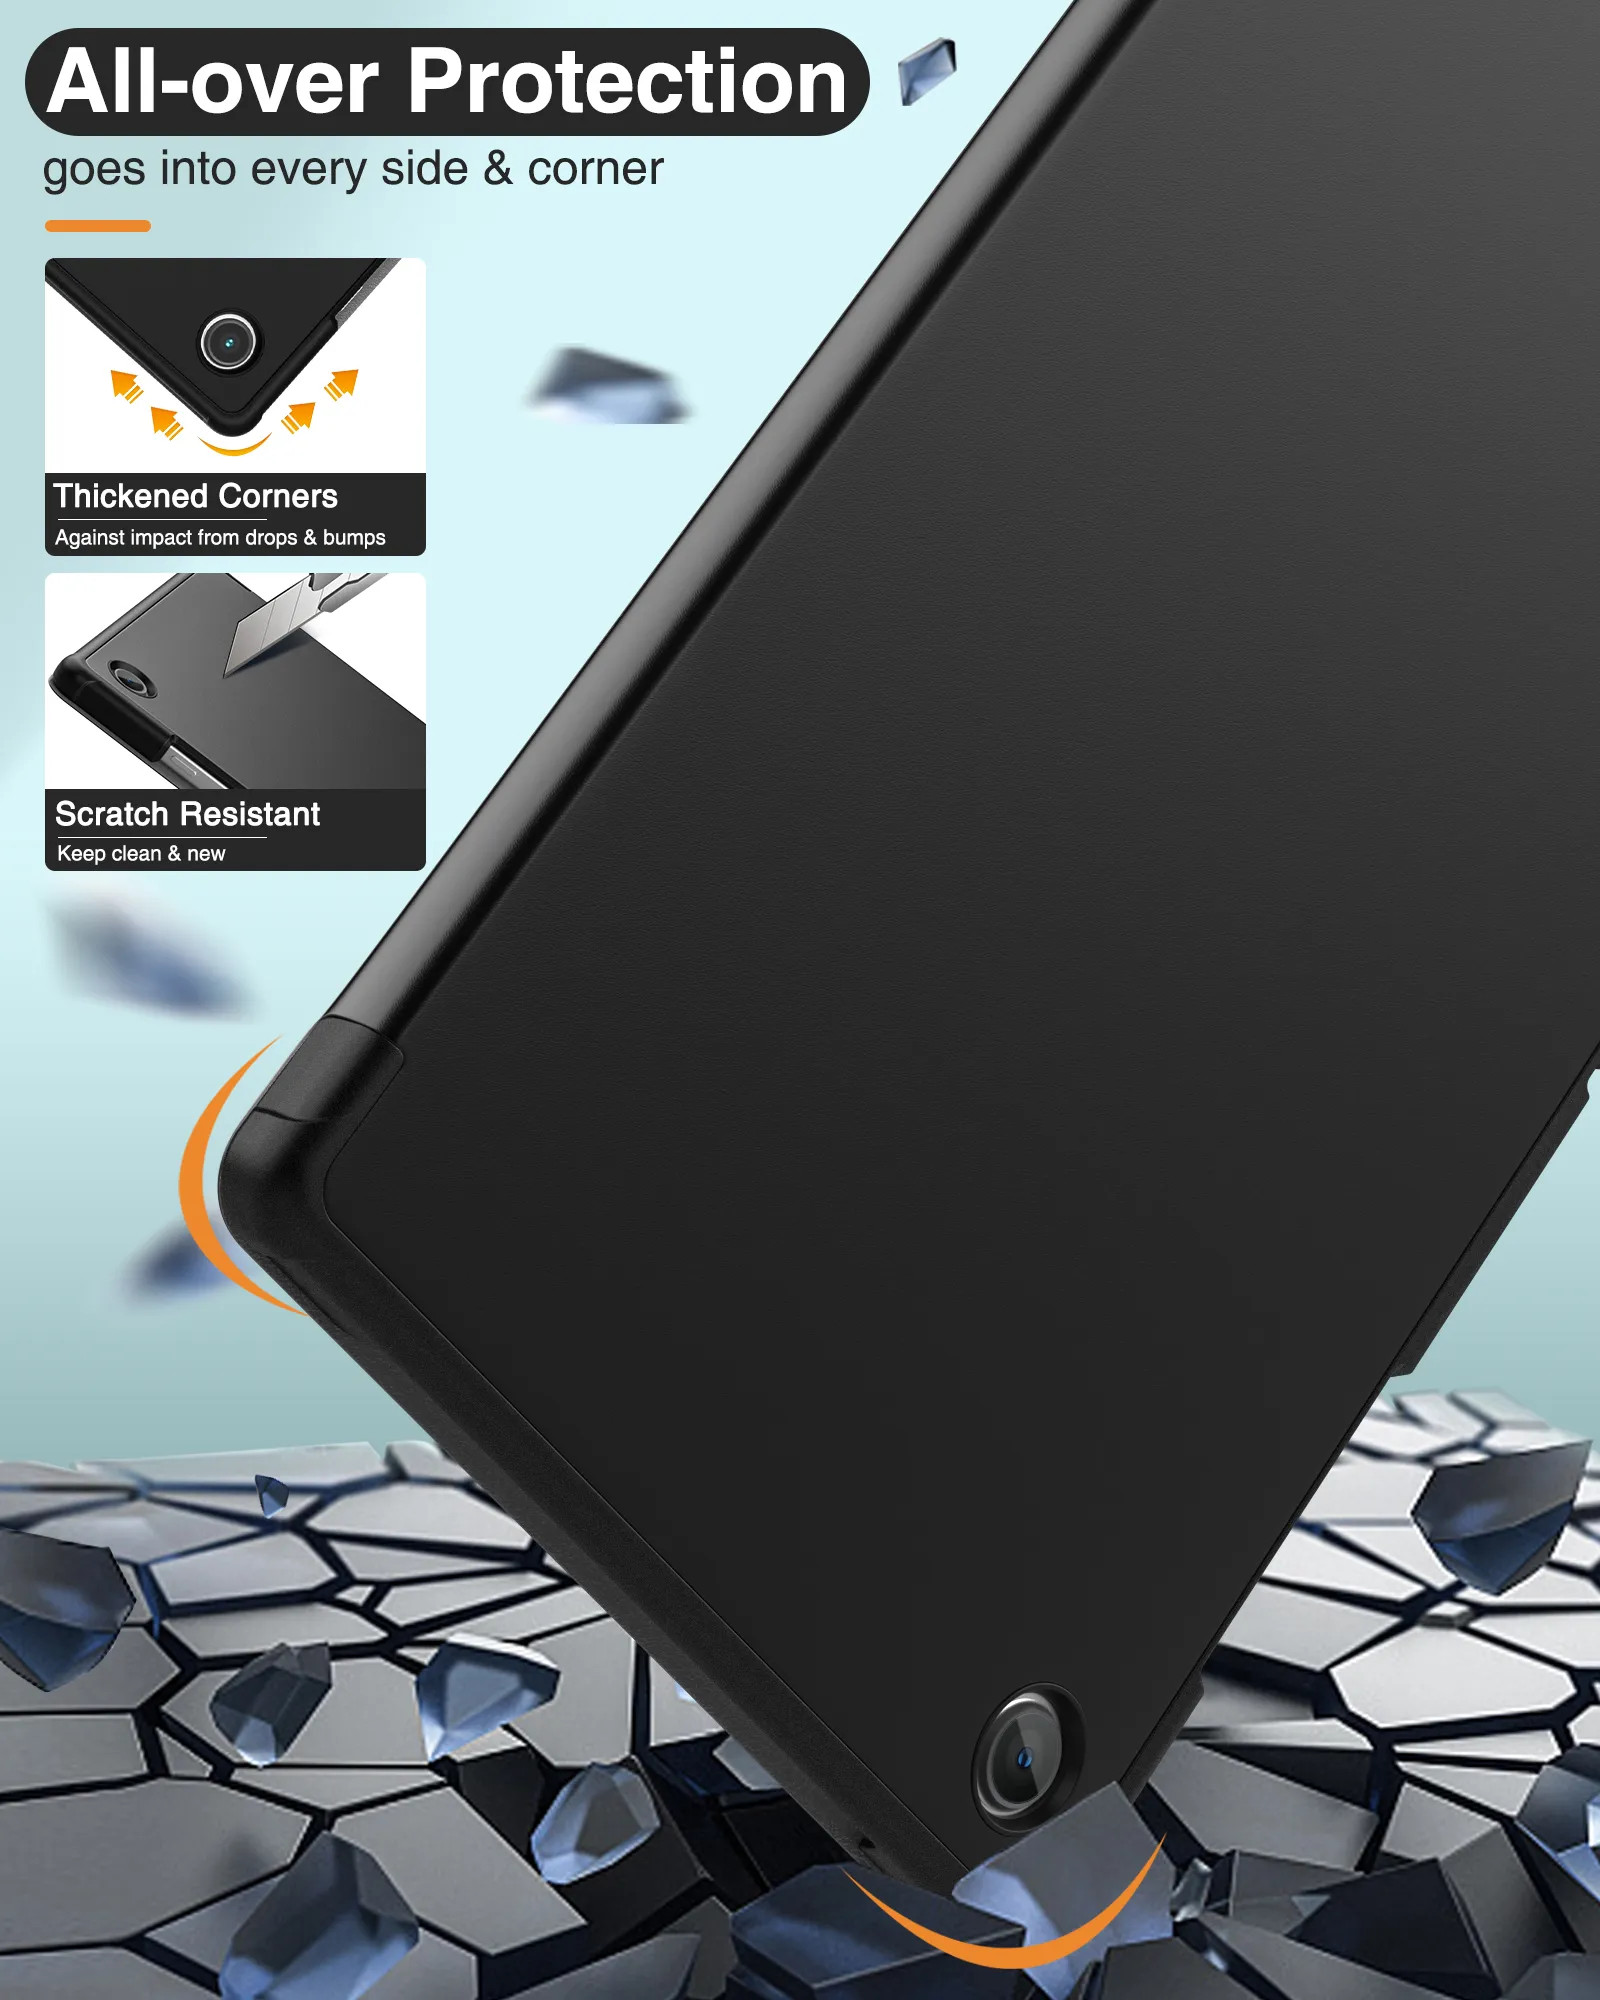 Bao da chống sốc cho Samsung Galaxy Tab A8 10.5 inch 2022 (SM-X200 / X205 / X207) hiệu HOTCASE thiết kế siêu mỏng hỗ trợ Smartsleep, gập nhiều tư thế, mặt da siêu mịn